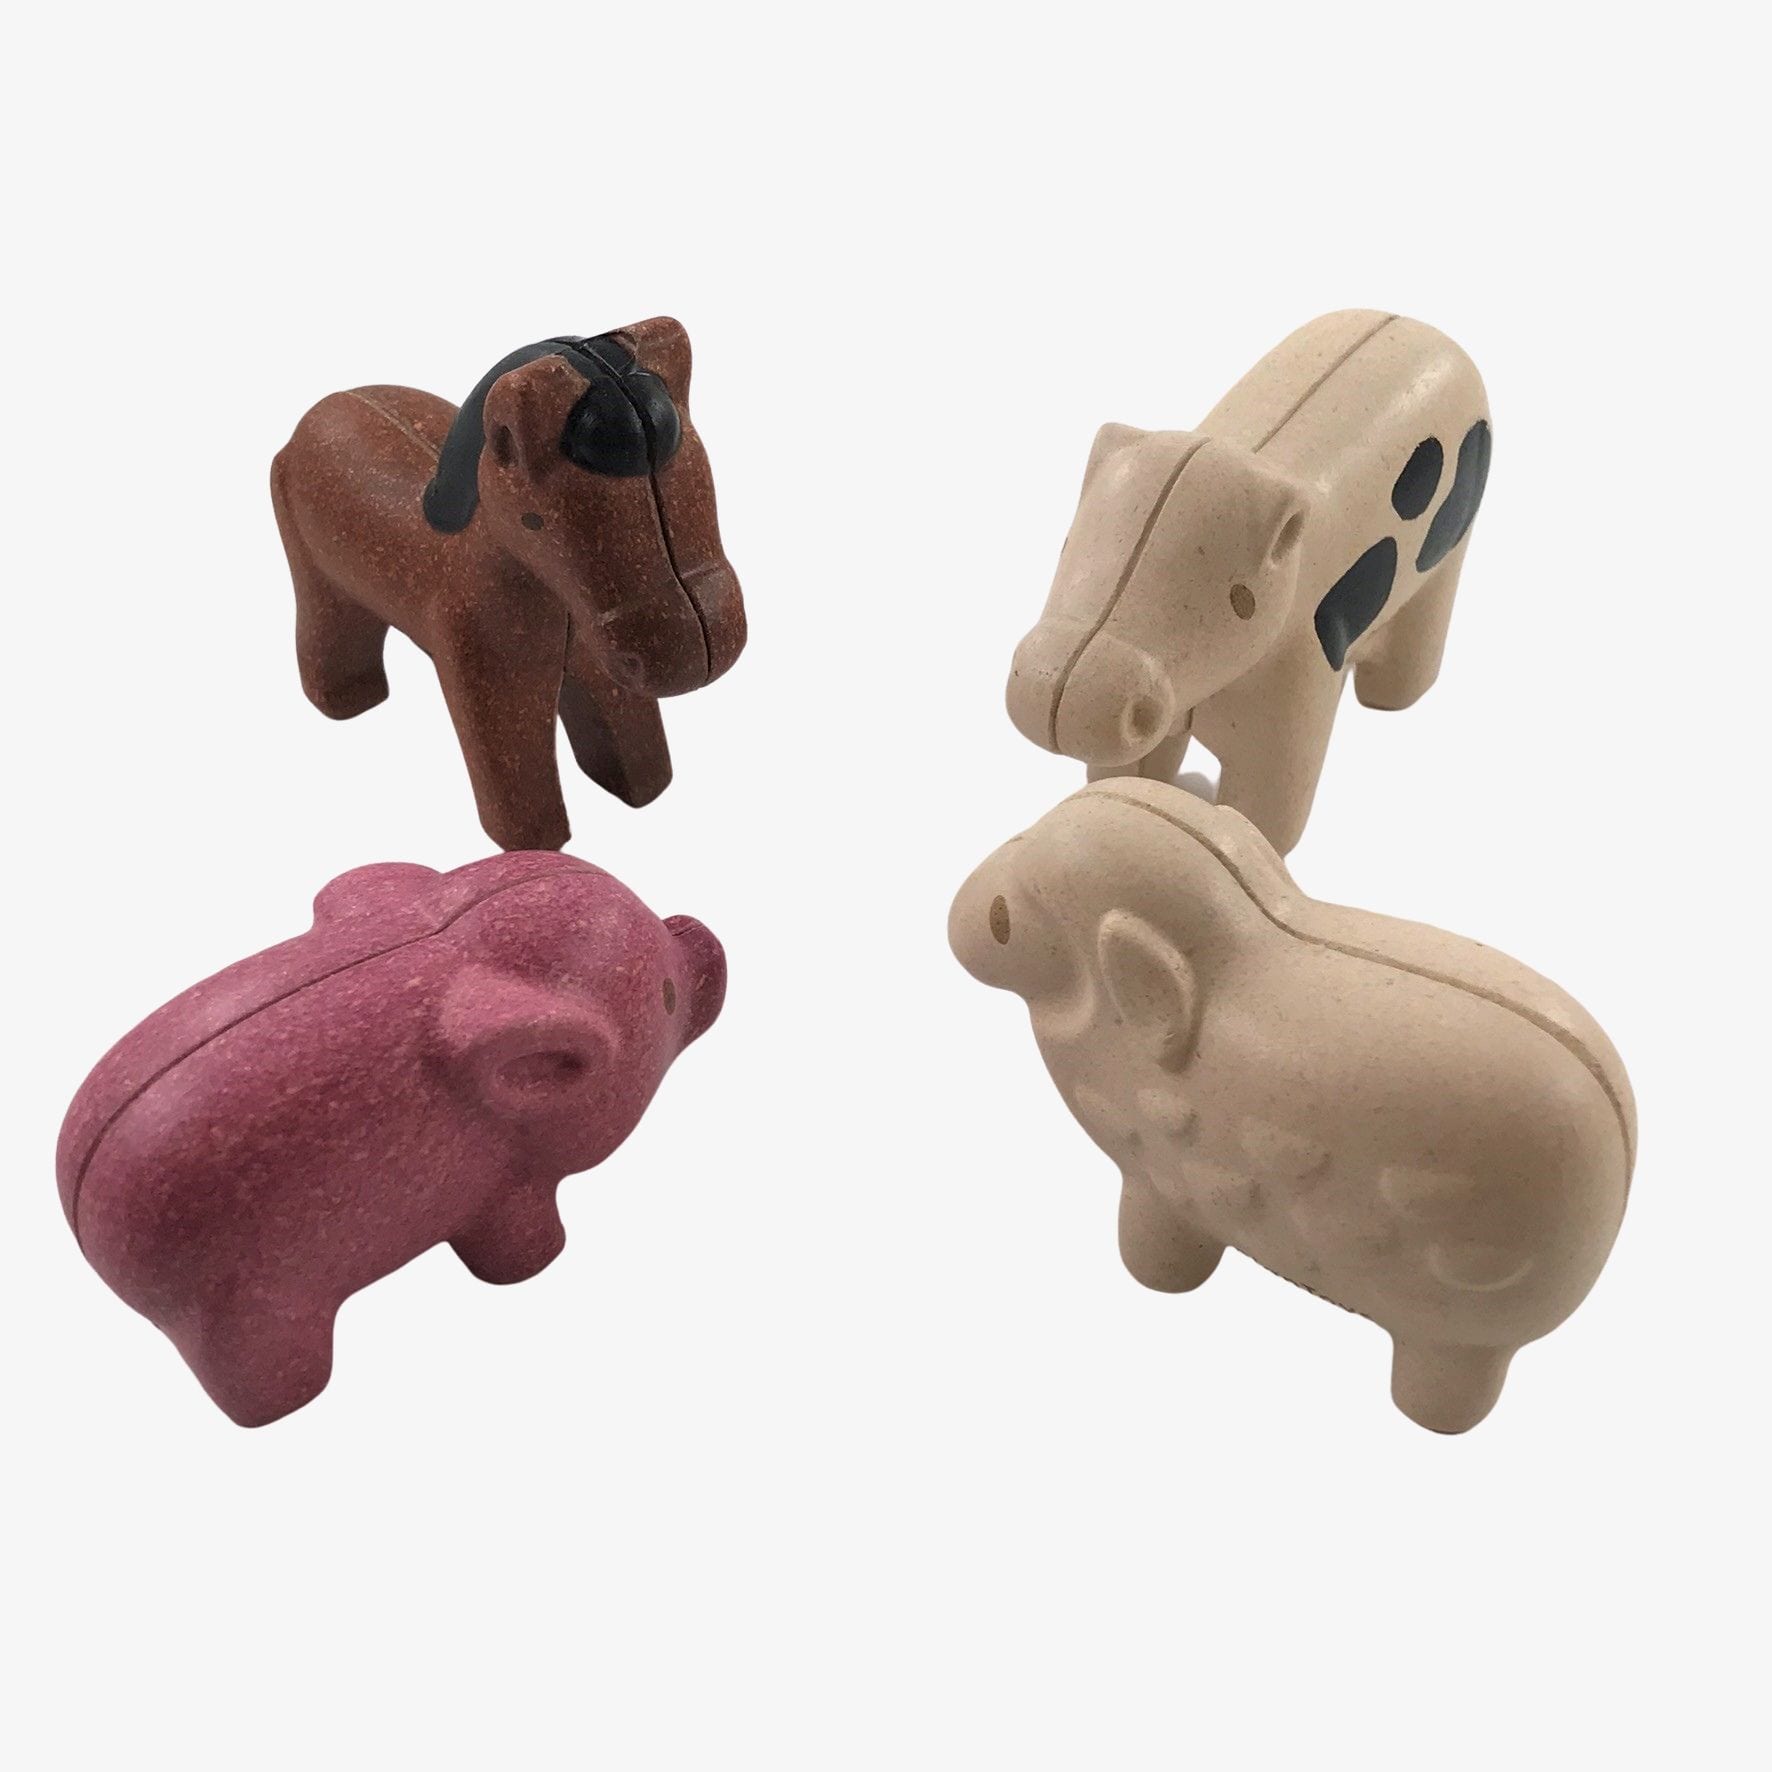 Plan Toys Farm animals set | Envirotoy